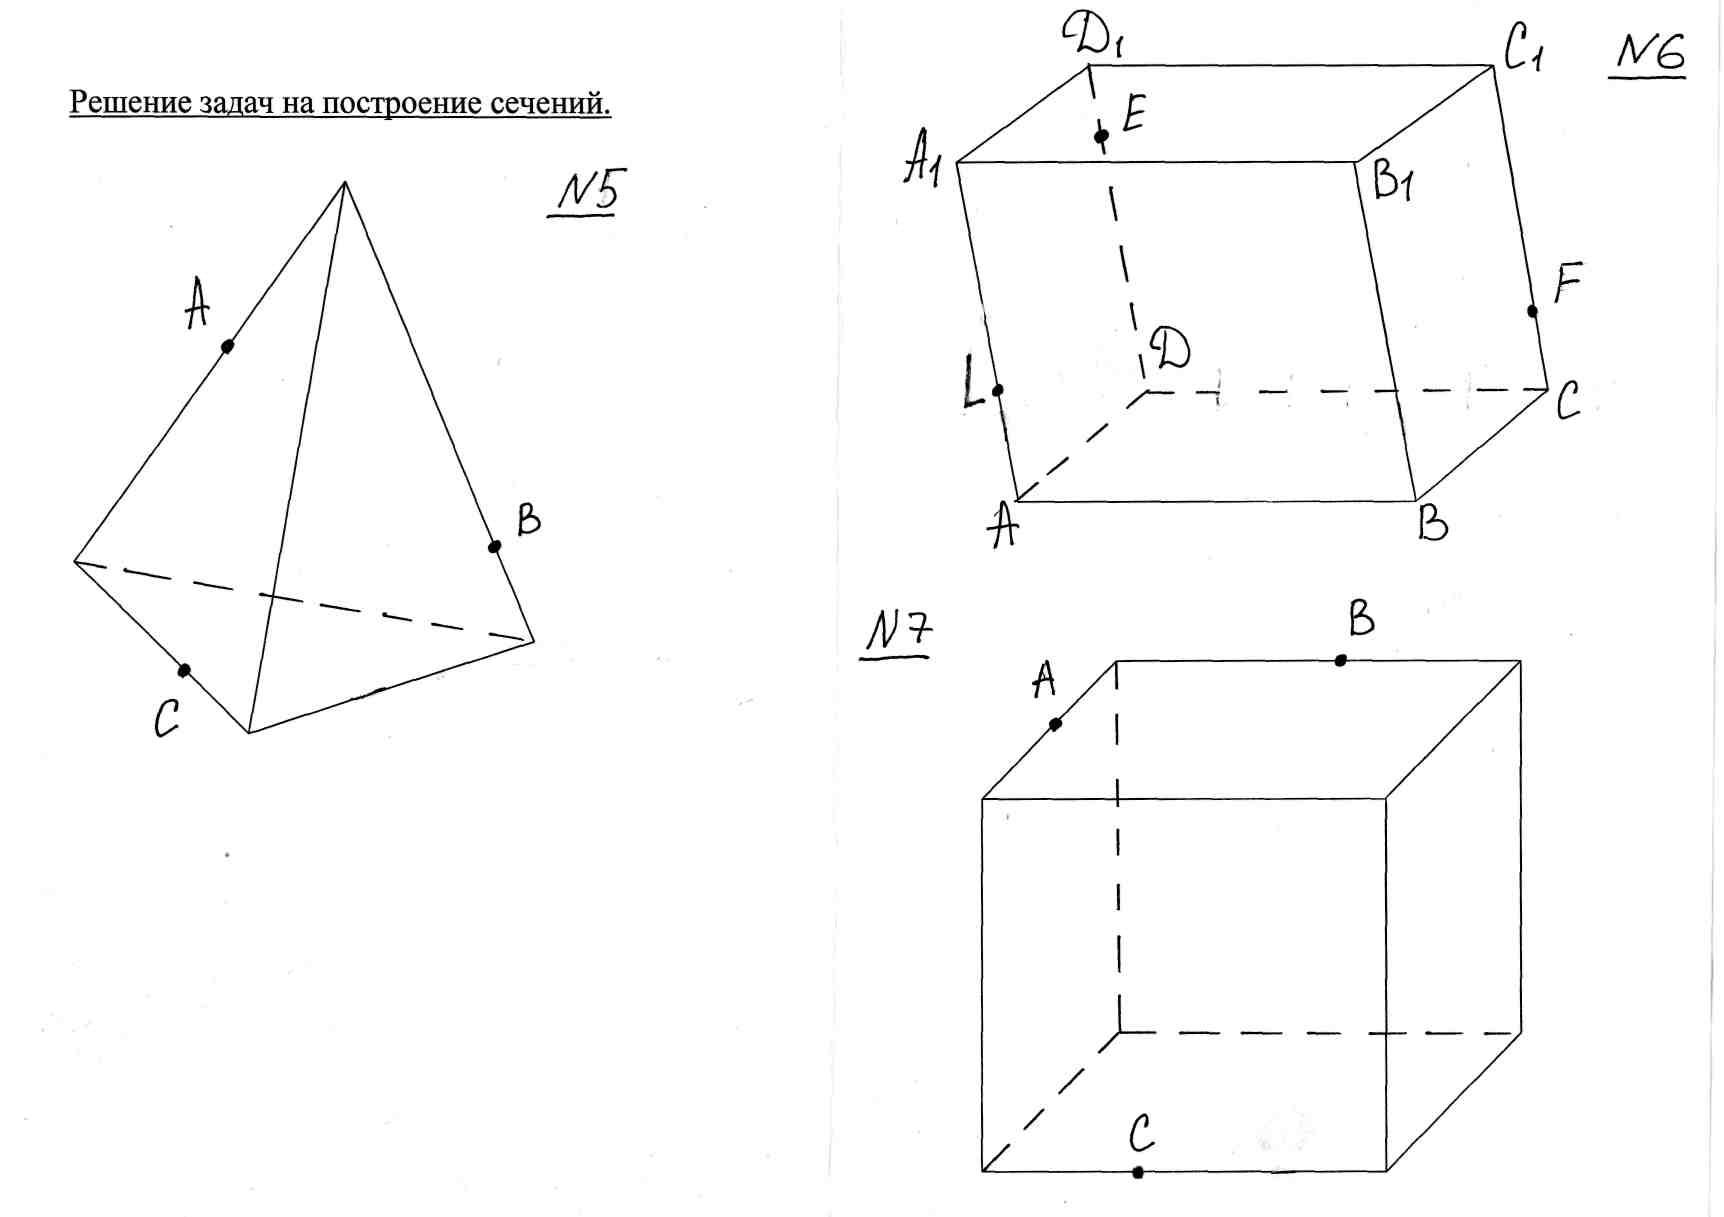 Сценарий урока геометрии в 10 классе по теме Решение задач на построение сечений